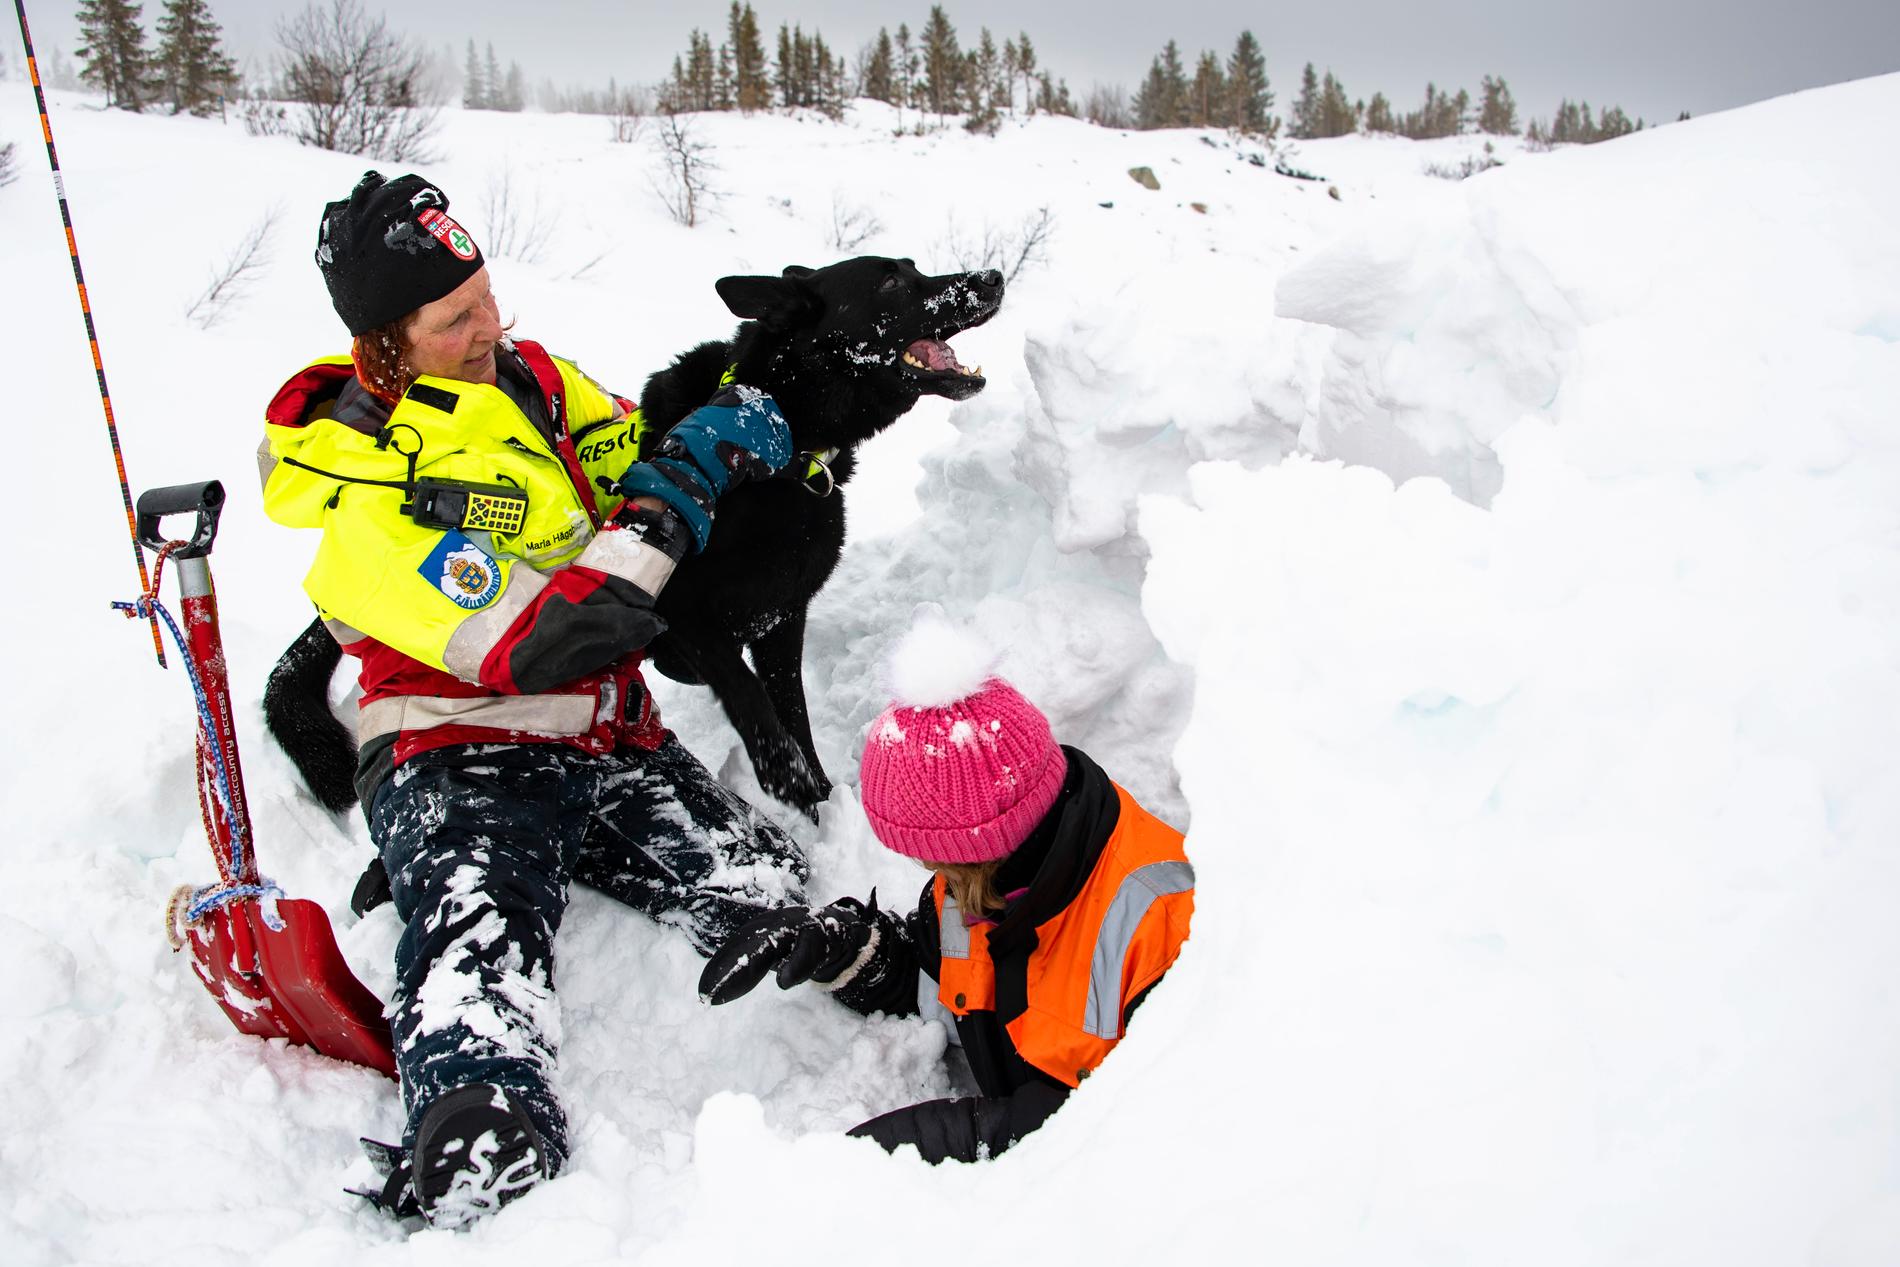 Maria berättar om en insats där en hund lyckades få vittring efter en person som låg begravd på nio meters djup under snön. I dagens övning söker Krut efter en person som ligger nedgrävd i en snögrotta.